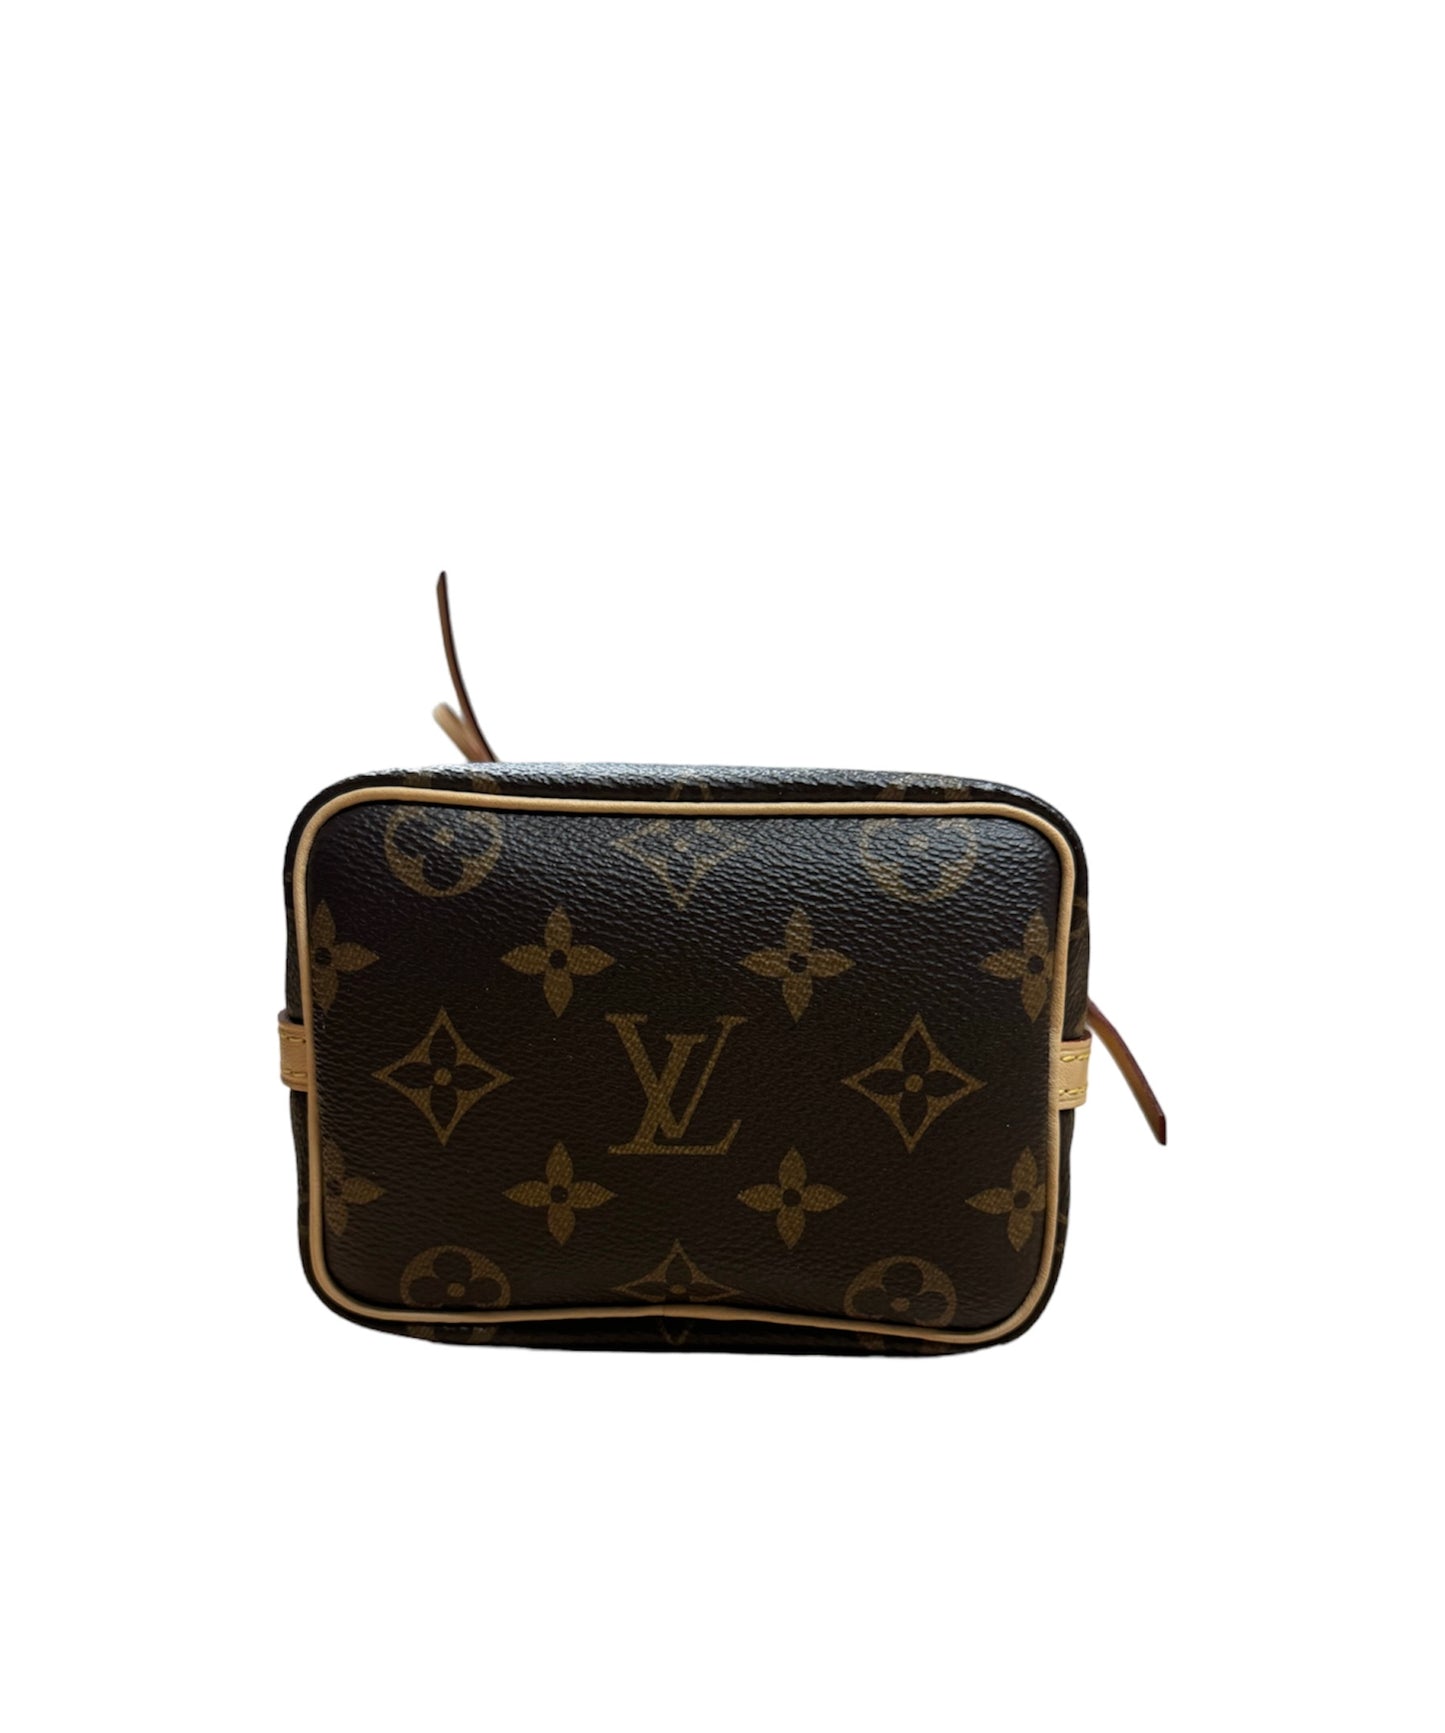 Louis Vuitton Noé Bucket Bag Nano Monogram